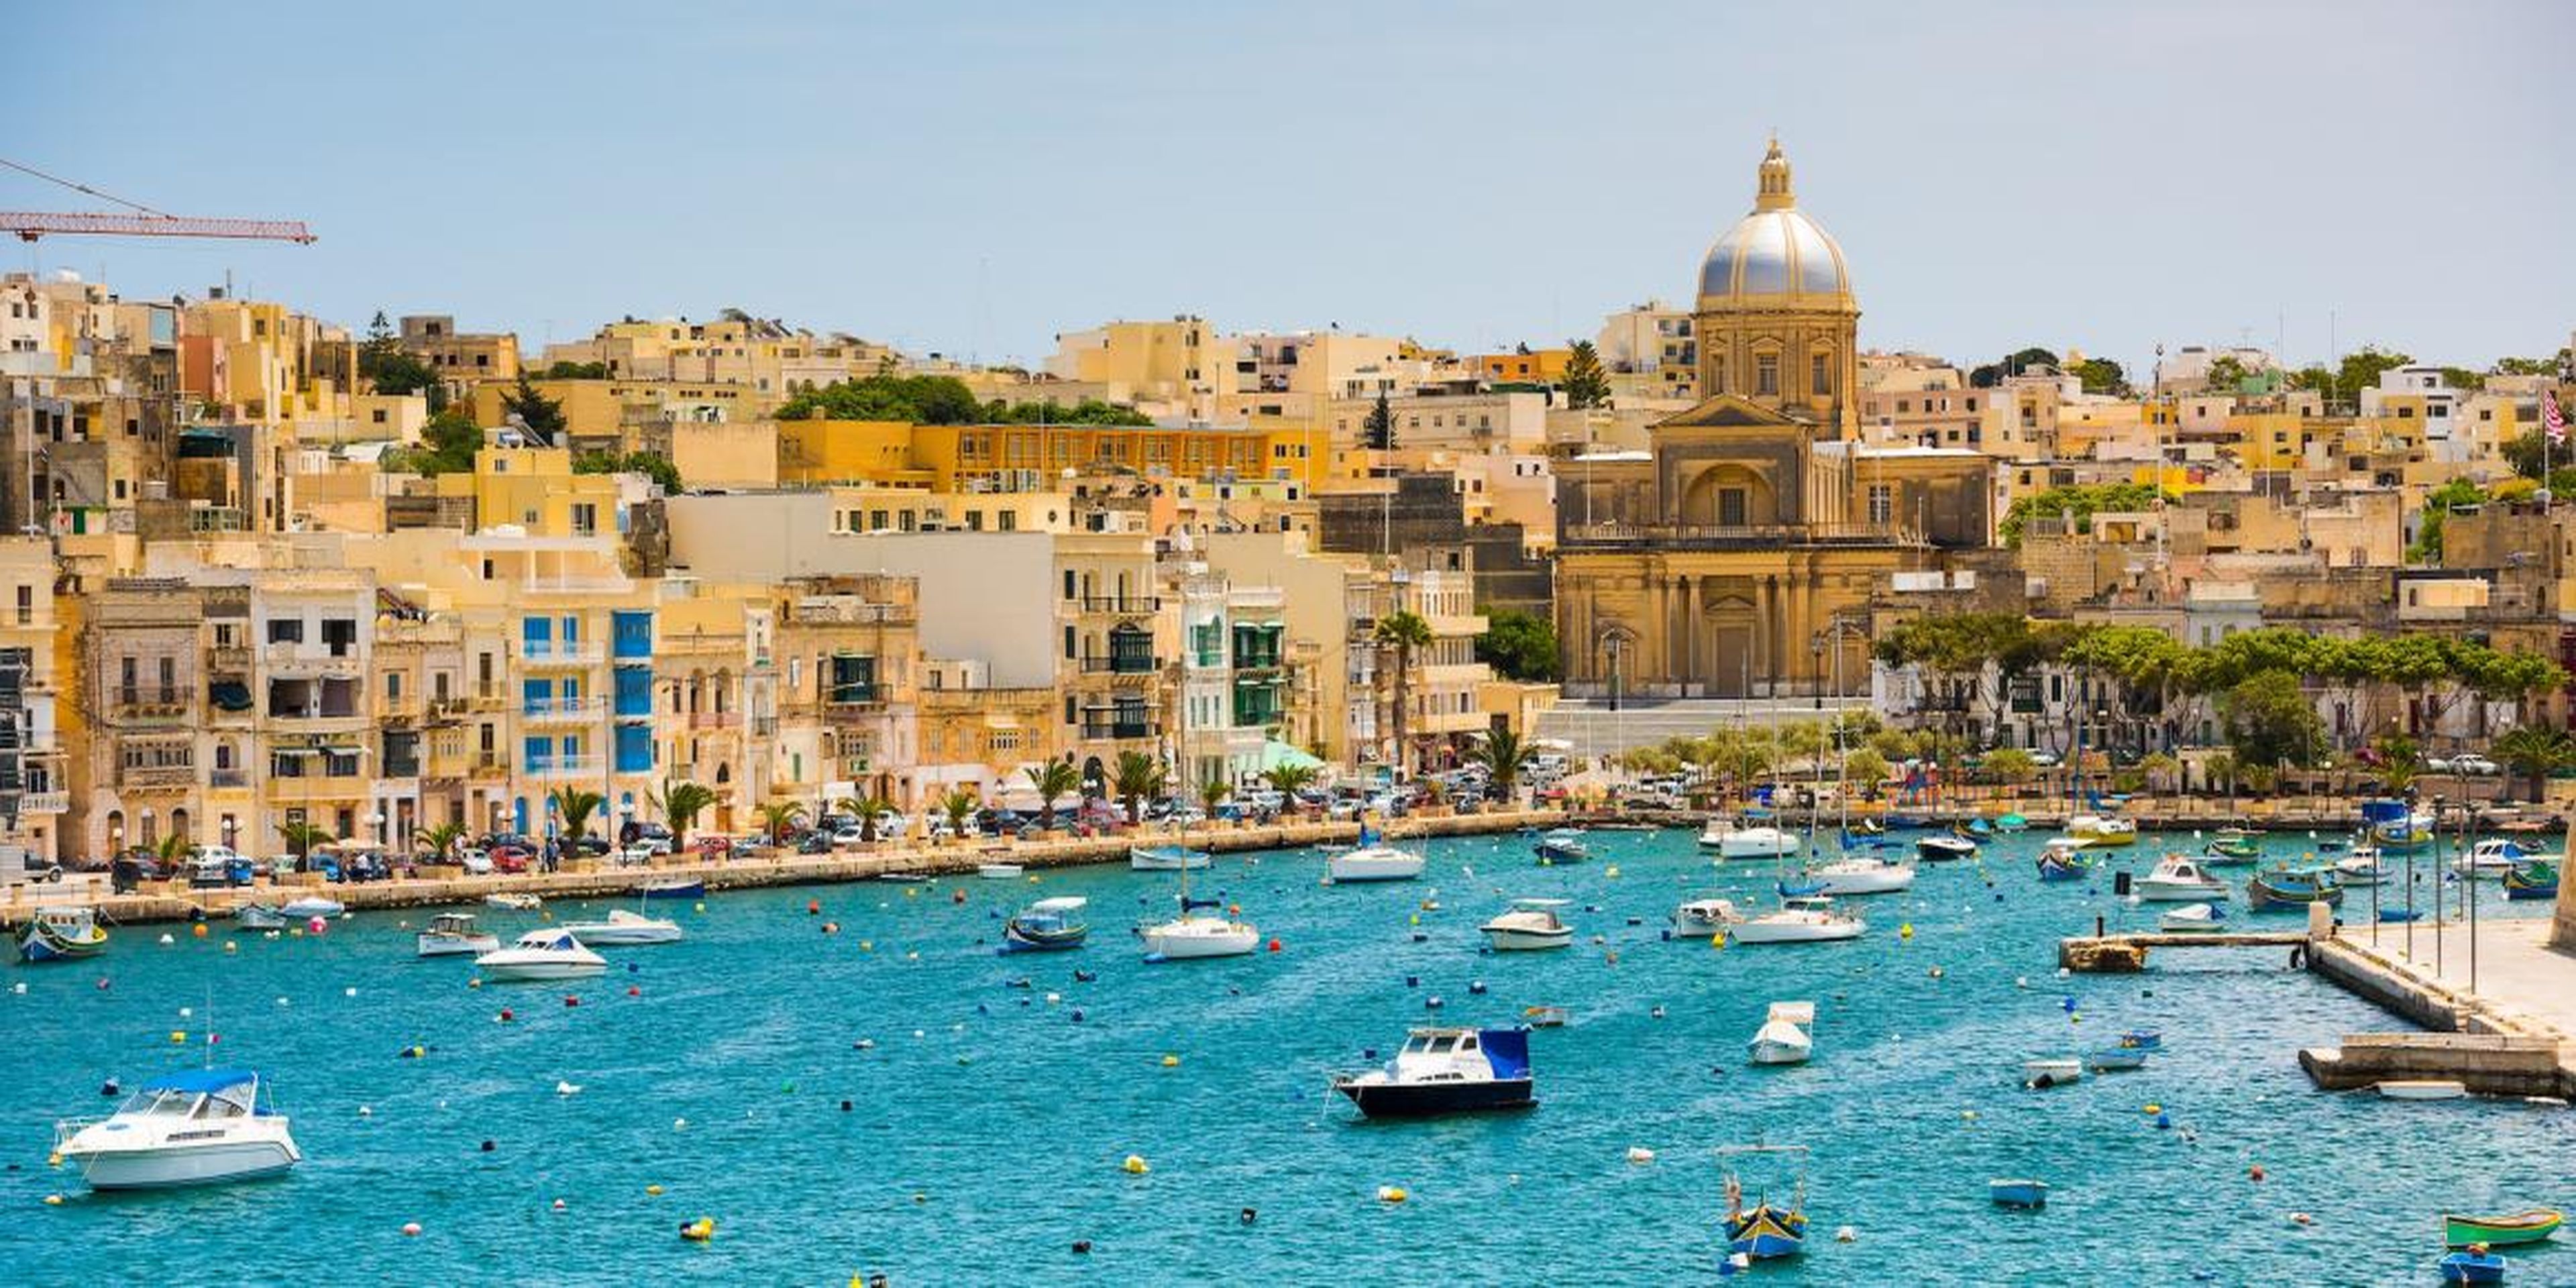 La isla de Malta ha dado una cálida bienvenida a la industria blockchain